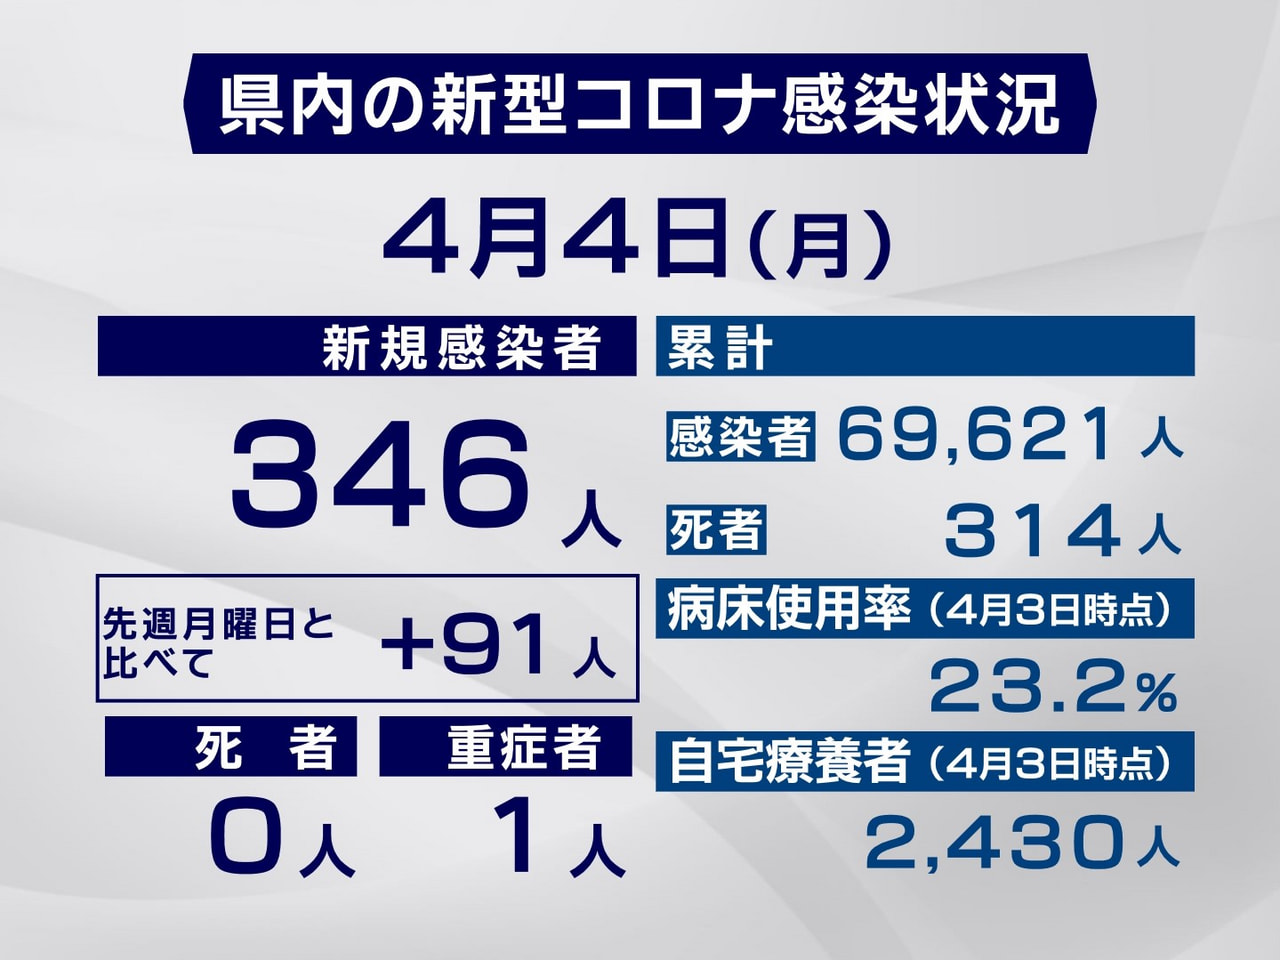 岐阜県は４日、新型コロナウイルスの新規感染者が３４６人確認されたと発表しました。...